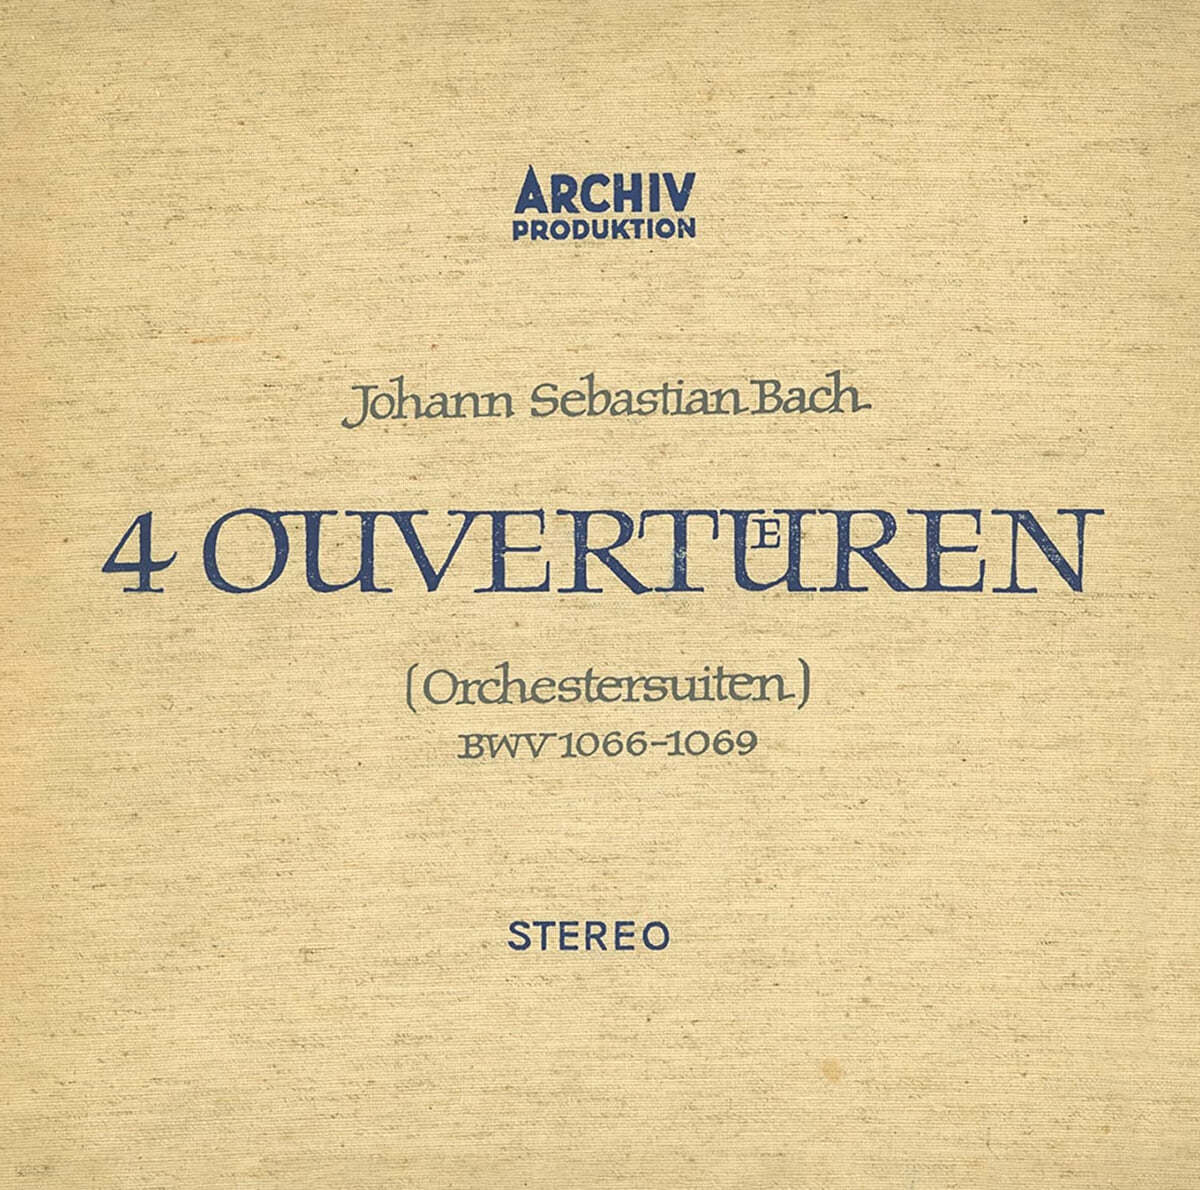 Karl Richter 바흐: 관현악 모음곡 (J.S Bach: Orchestral Suites Nos. 1-4)